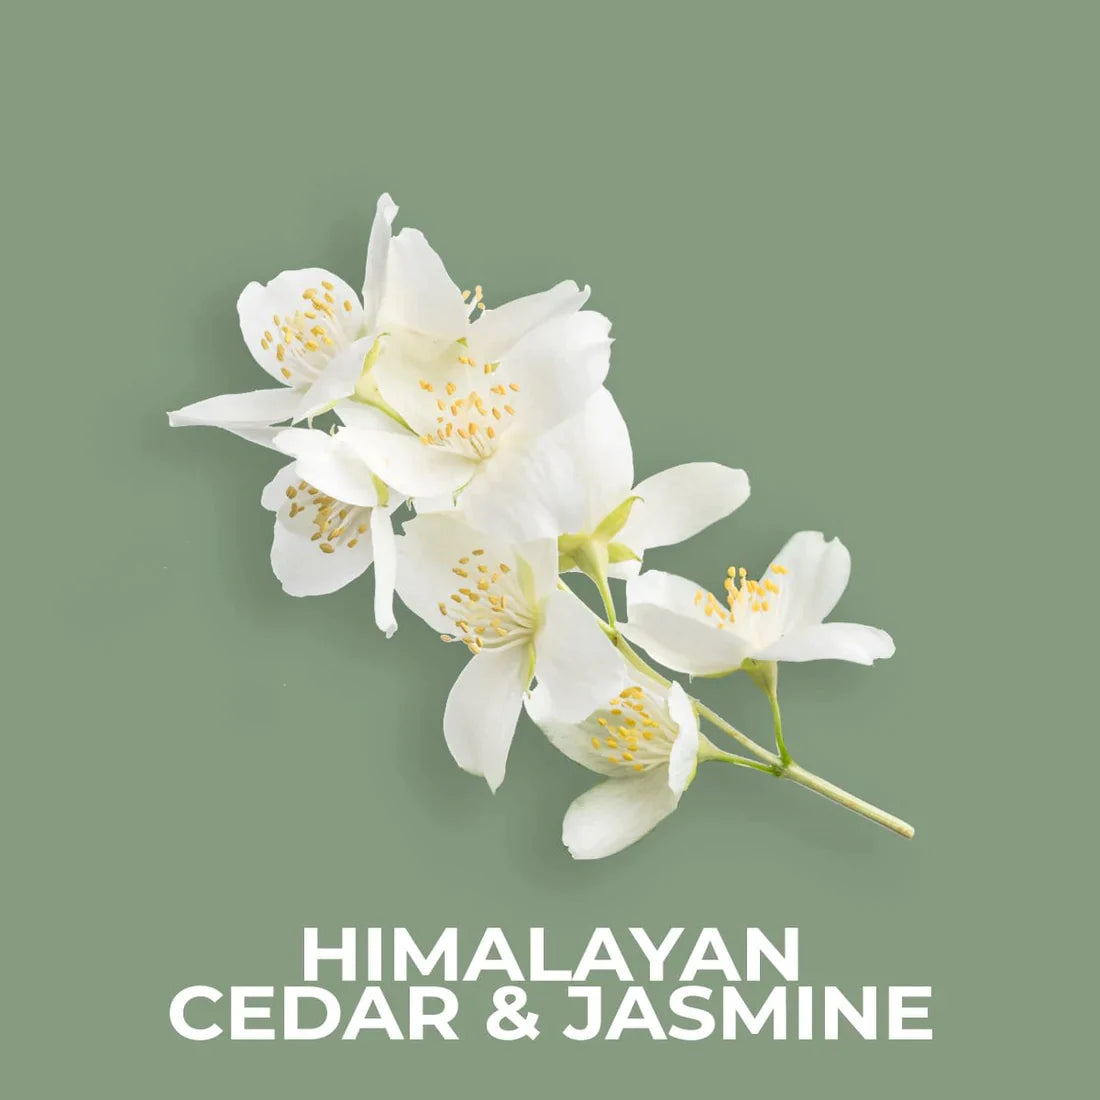 Himalayan Cedar & Jasmine 20g Shot Pot